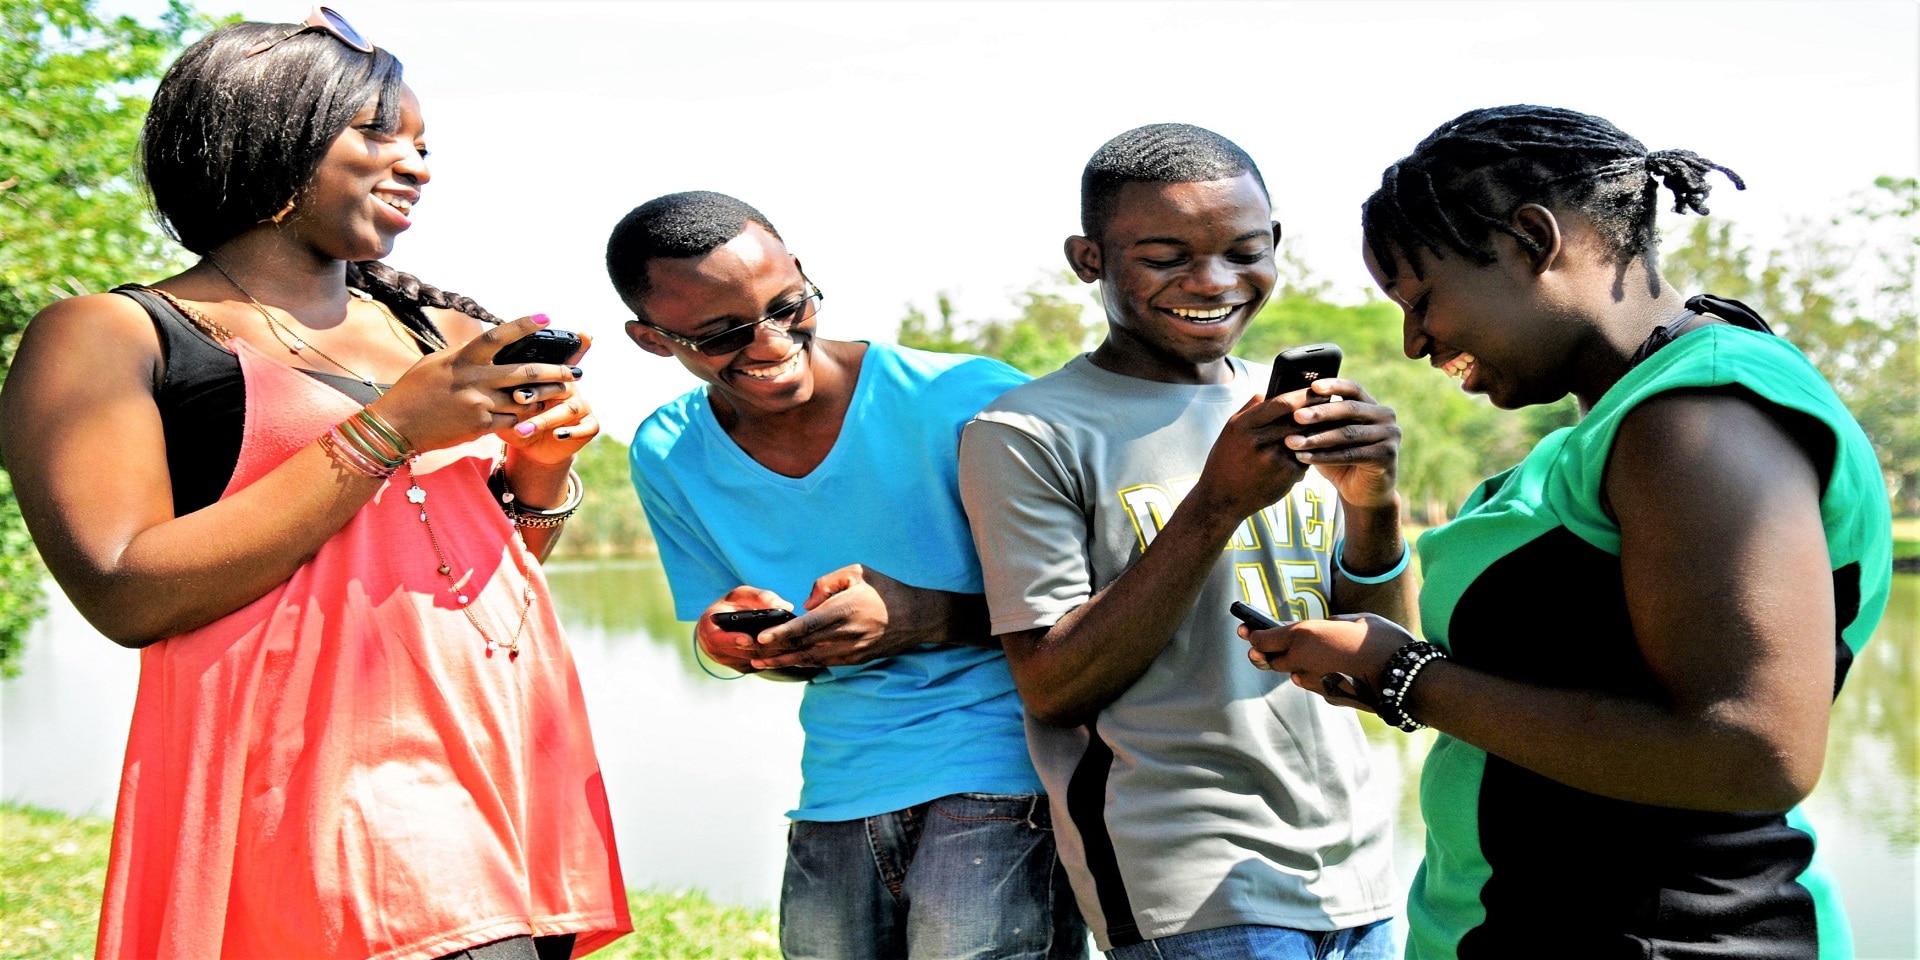 Quatre jeunes s’amusent ensemble tout en regardant leurs téléphones portables.